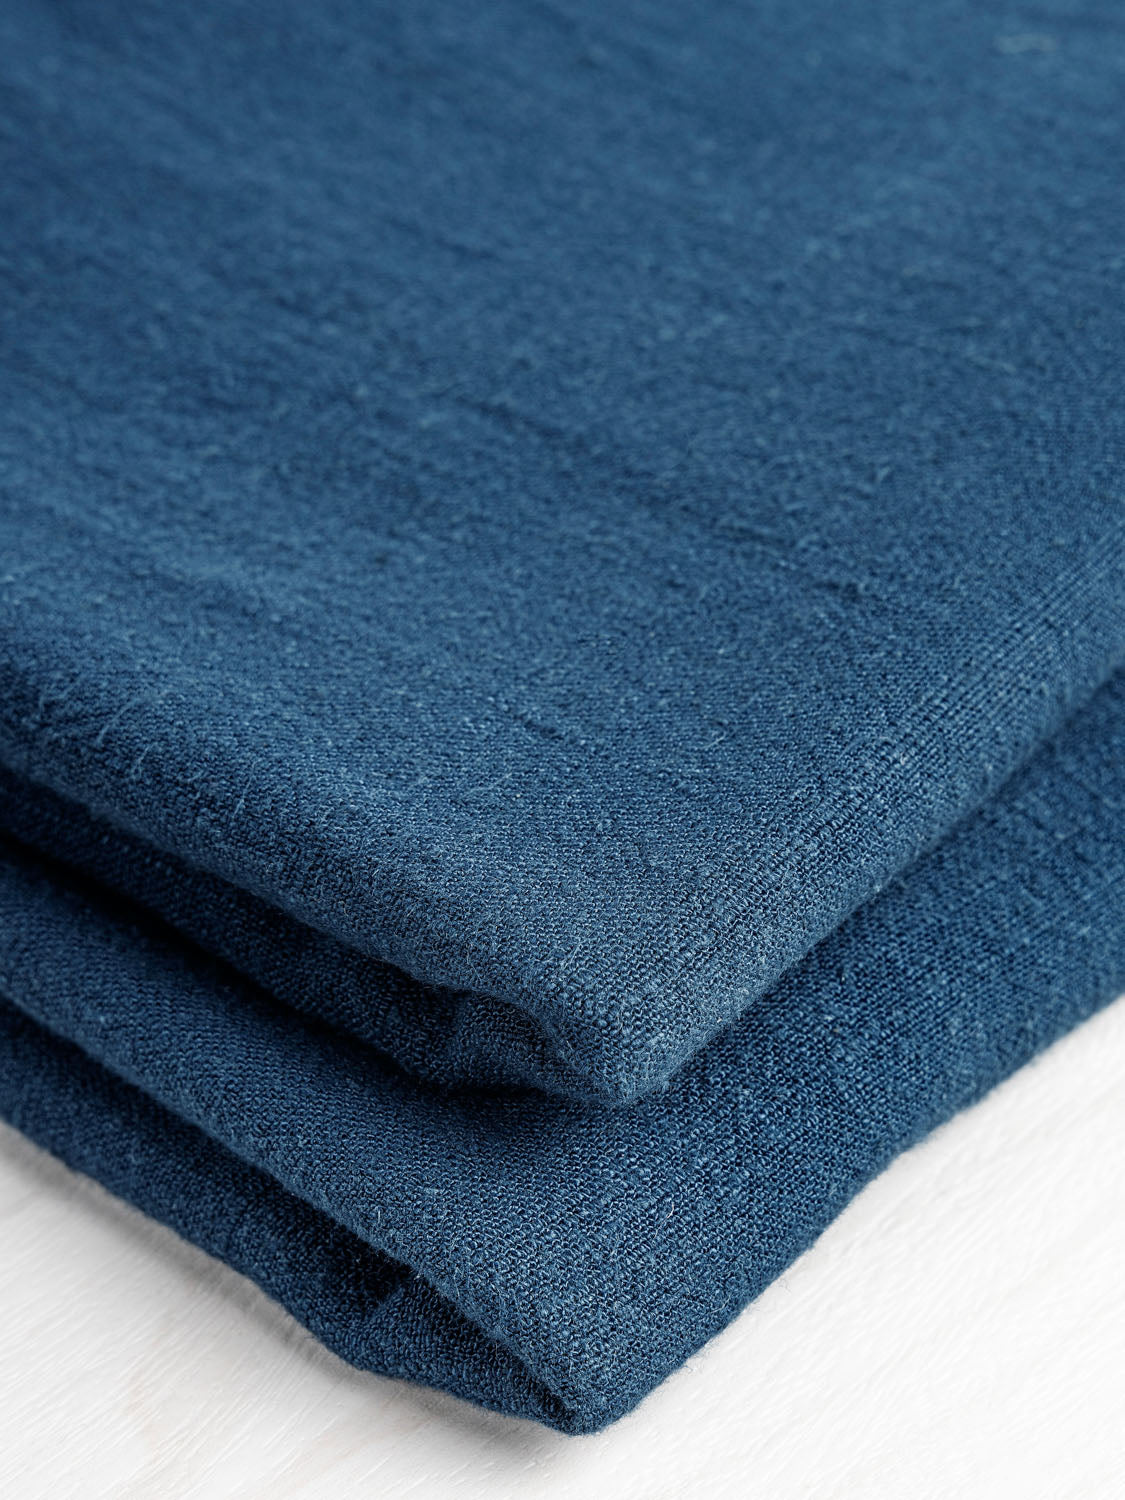 Textured Viscose Linen - Deep Teal | Core Fabrics